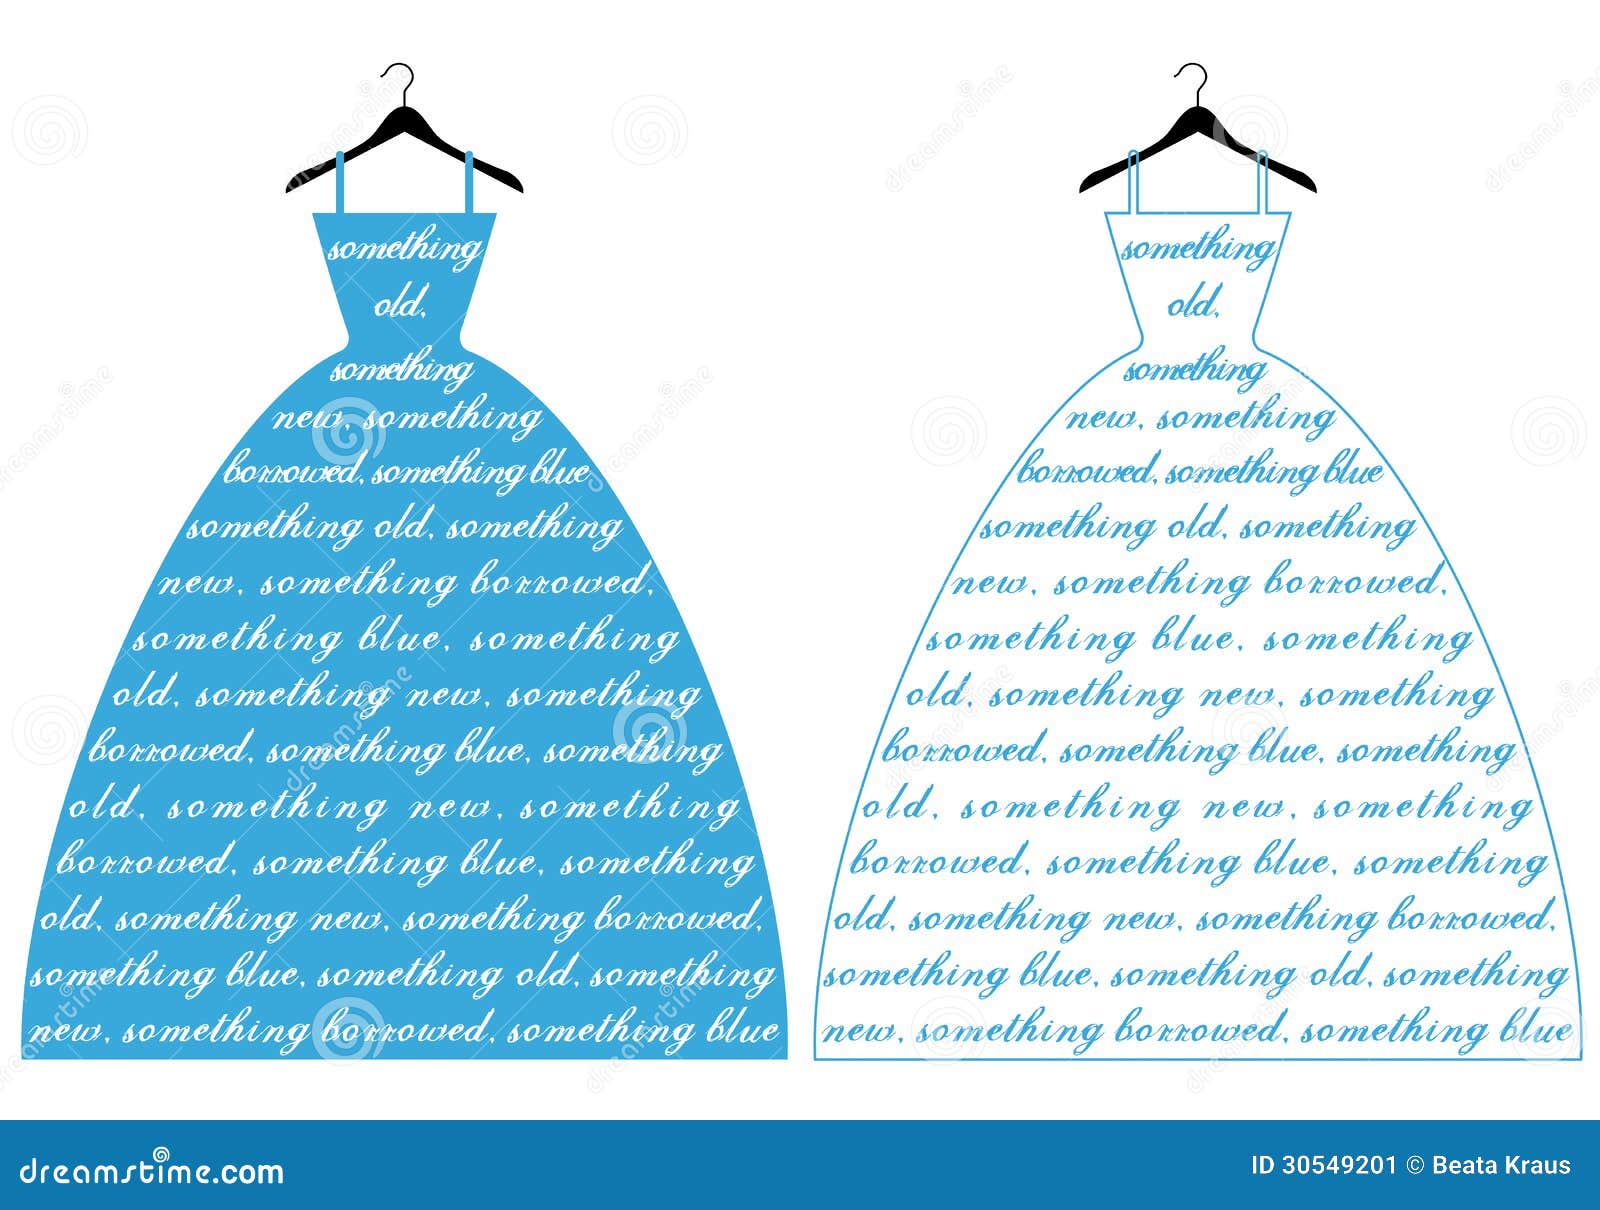 Vestido de casamento com texto algo azul, ilustraÃ§Ã£o do vetor.